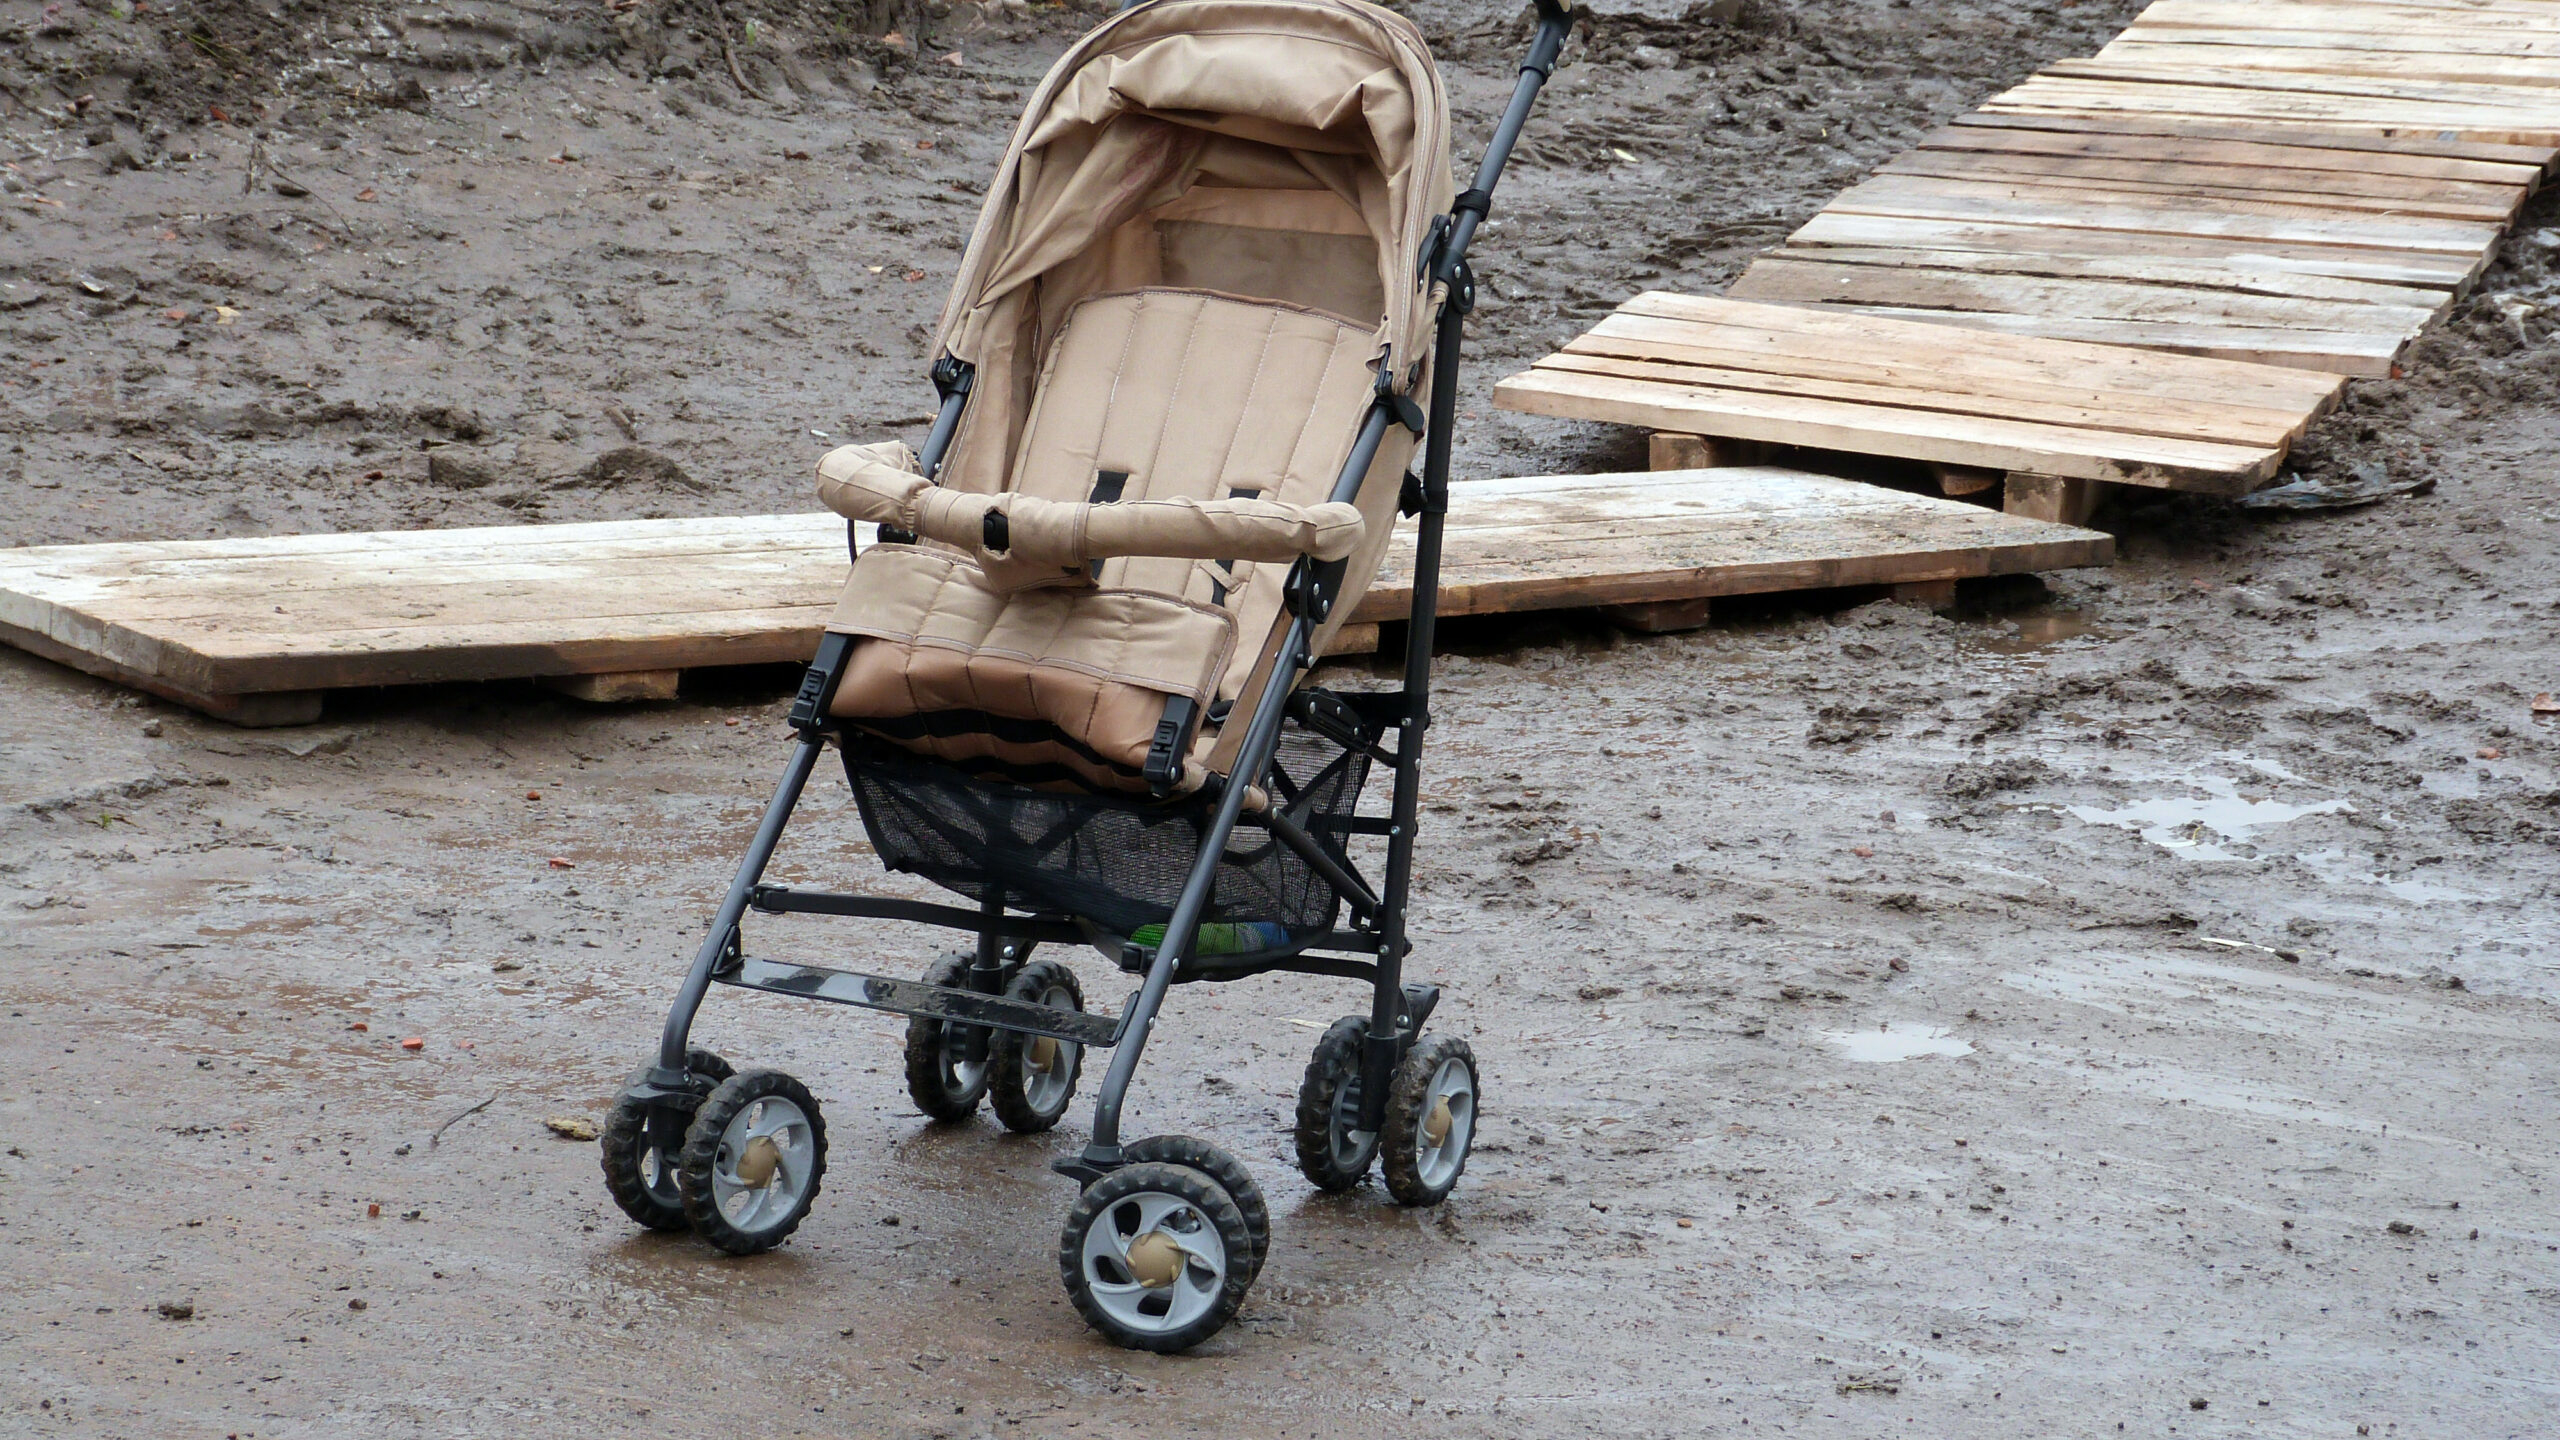 Петербуржцы обнаружили одинокую коляску с ребенком и бутылкой водки у Финского залива